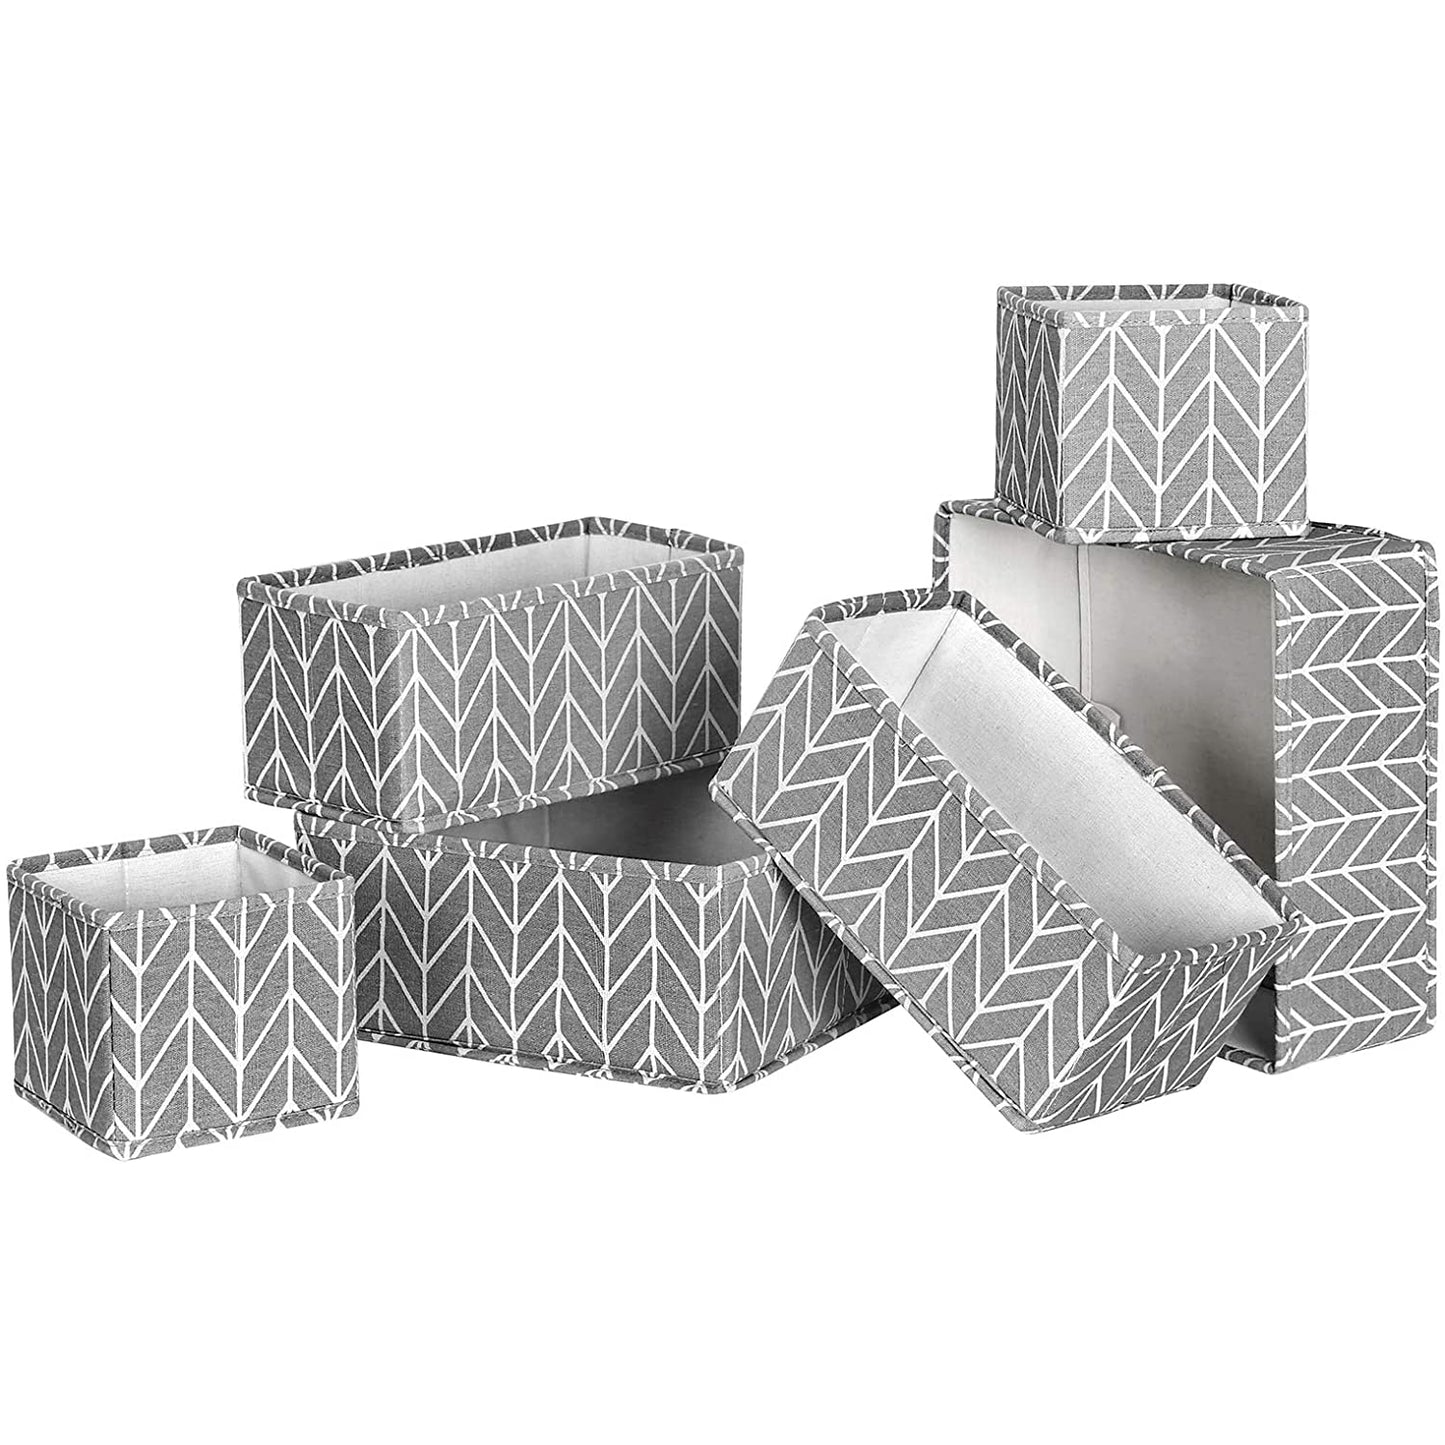 Boîtes de rangement Nancy's Baraboo - 6 boîtes de rangement - Pliables - Organisateurs - Boîtes à vêtements - Durable - Gris - 3 tailles - Coton - Tissu